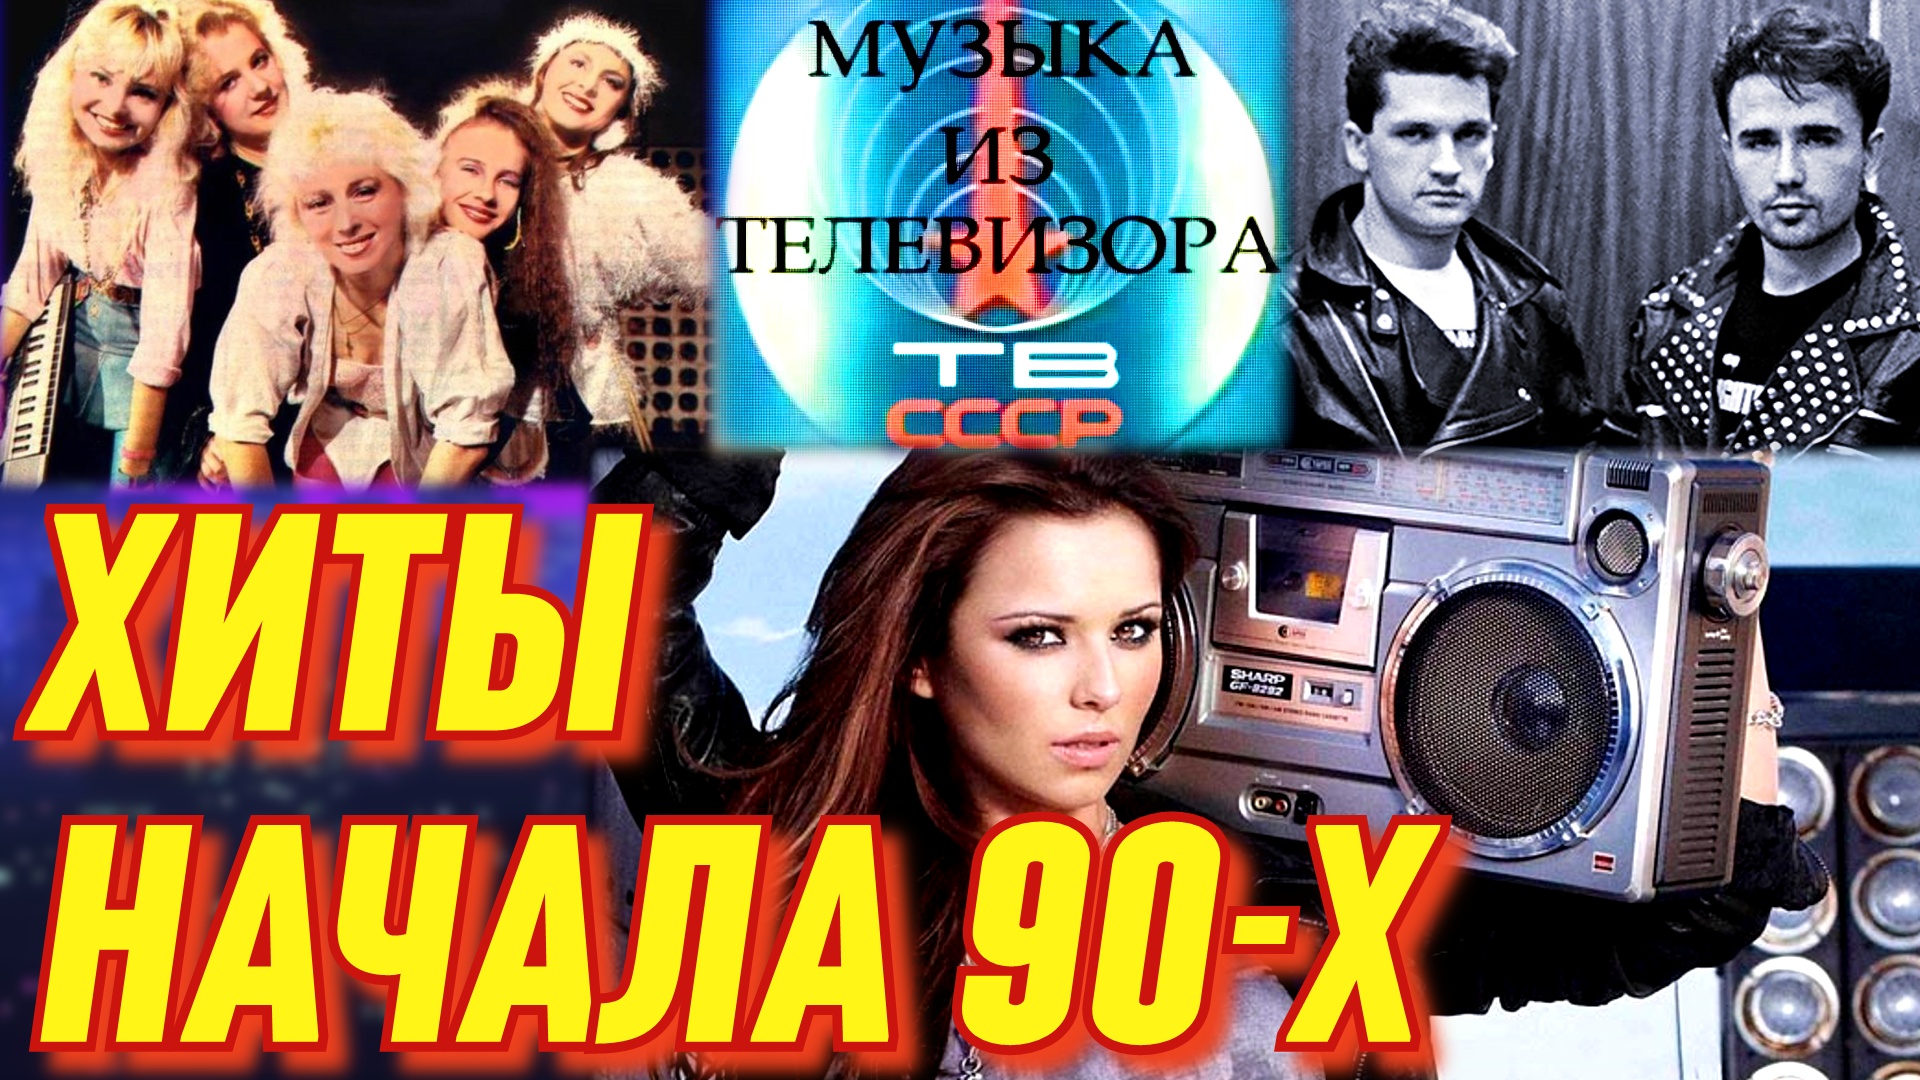 Русские песни 90 х в современной обработке. Музыка-90-х. Муз каналы 90х. Девушки из 90-х.